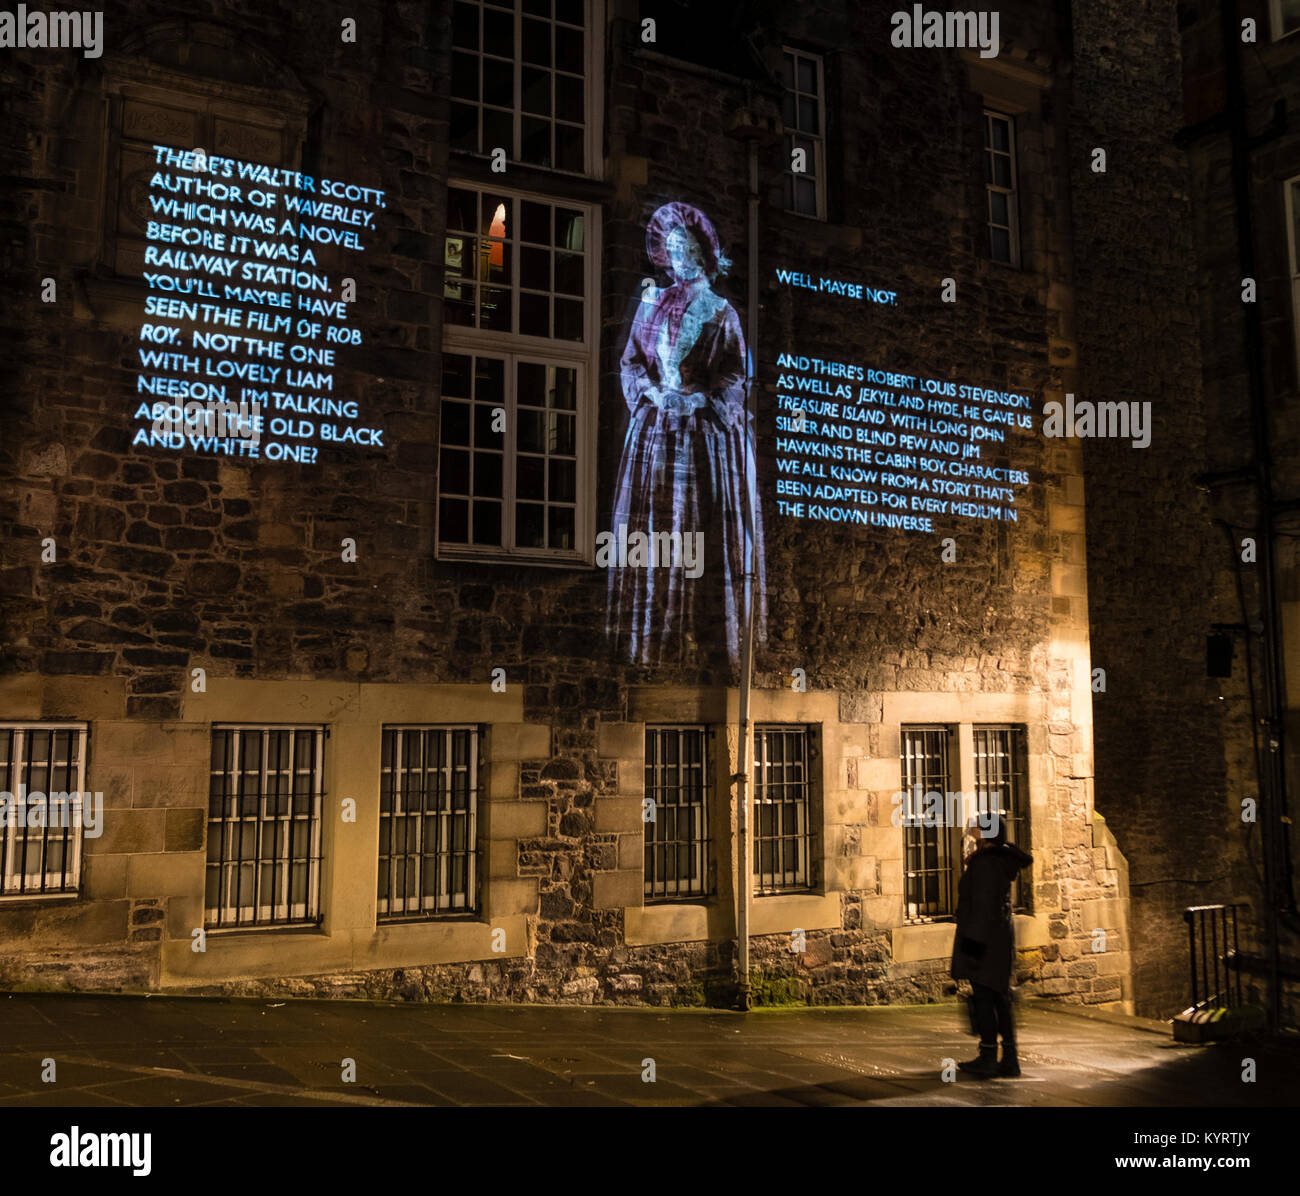 Autor Val McDermid la breve historia de la resurrección de 'año nuevo', un mensaje del cielo, proyectado en la noche en varias localidades en Edimburgo. Foto de stock